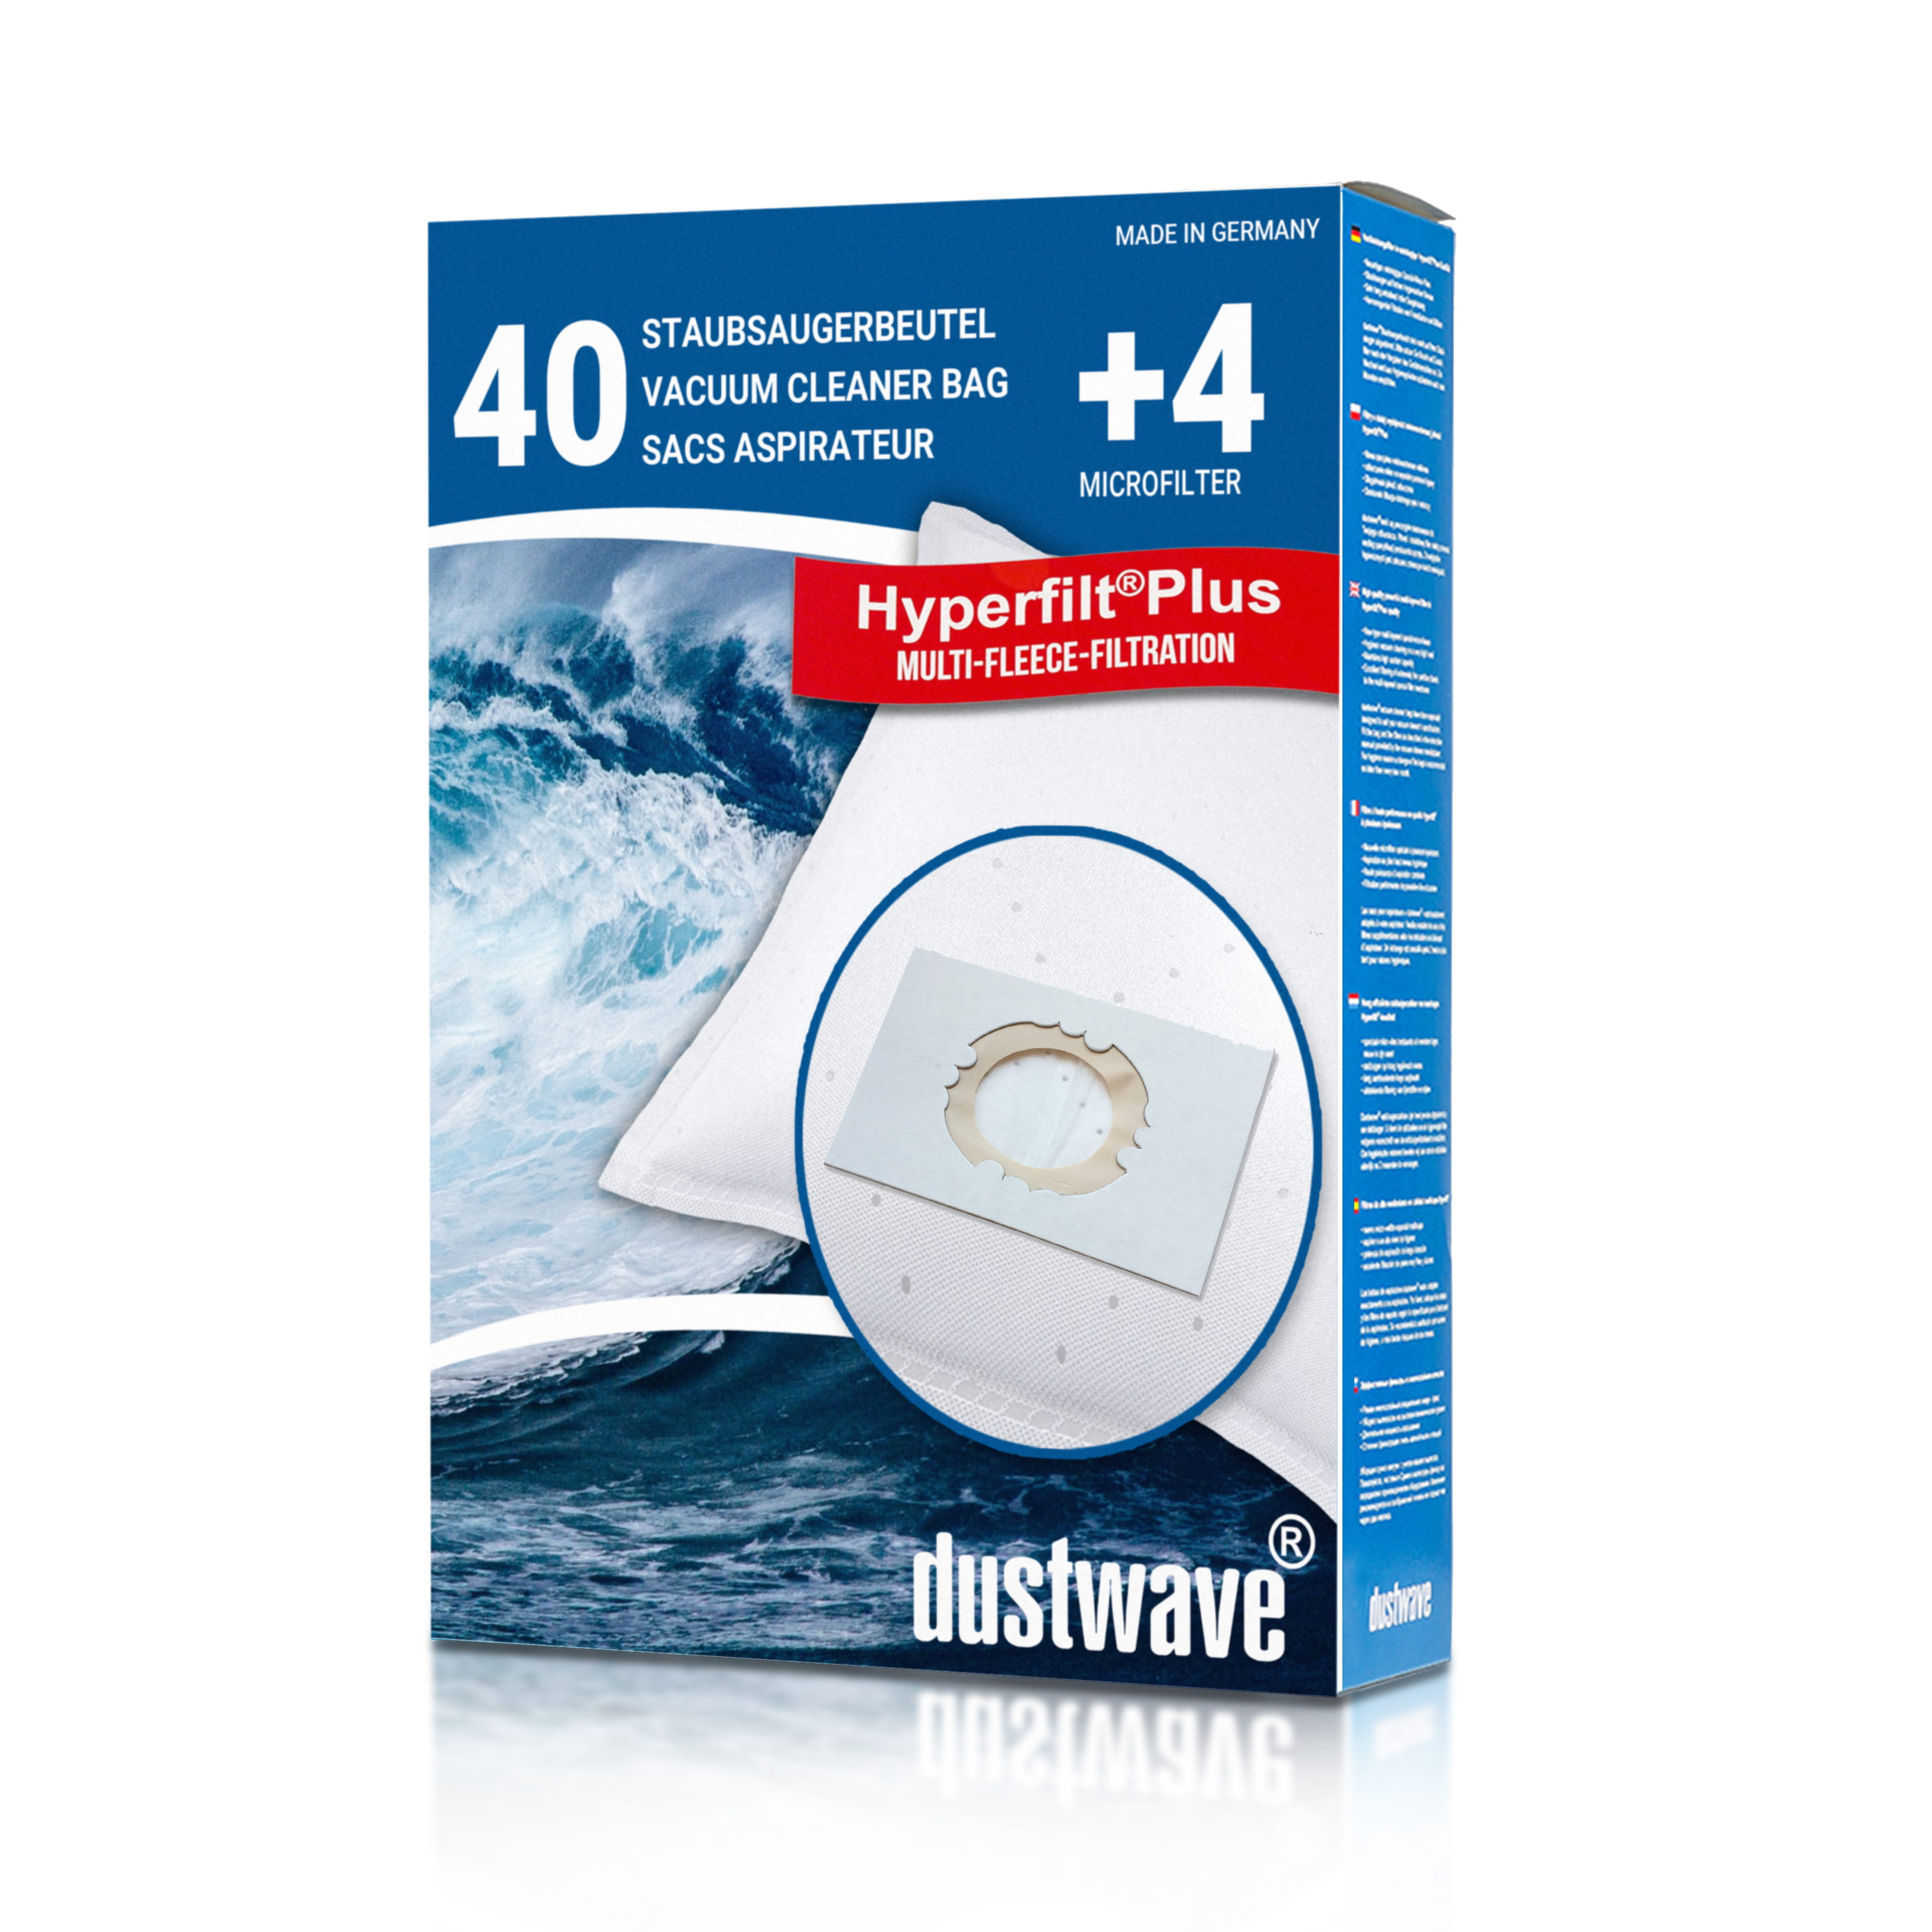 Dustwave® 40 Staubsaugerbeutel für AEG Multi Pro - hocheffizient, mehrlagiges Mikrovlies mit Hygieneverschluss - Made in Germany